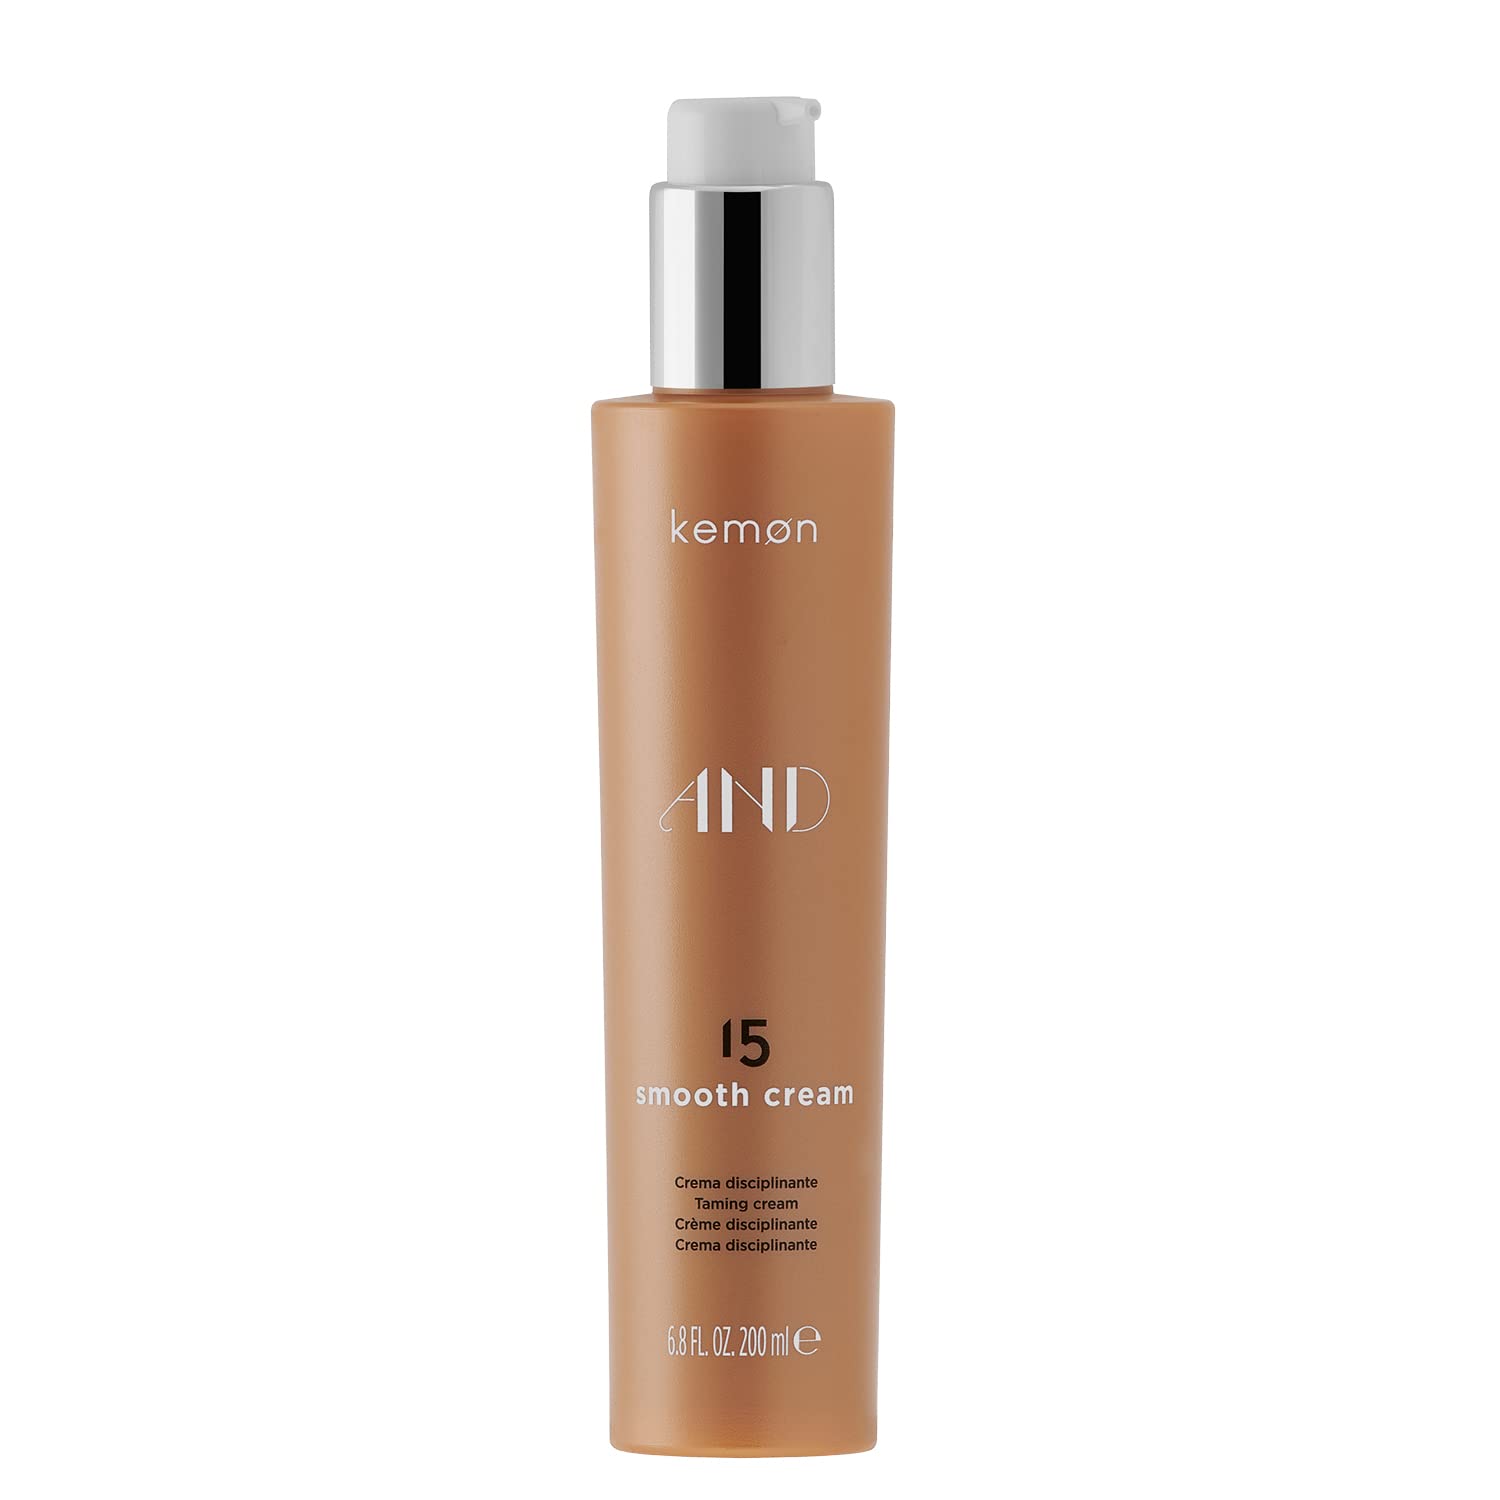 Kemon AND 15 Smooth Cream - glättende Haar-Creme für mehr Geschmeidigkeit, ideal bei störrischem Haar, Haar-Pflege in Friseur-Qualität - 200 ml